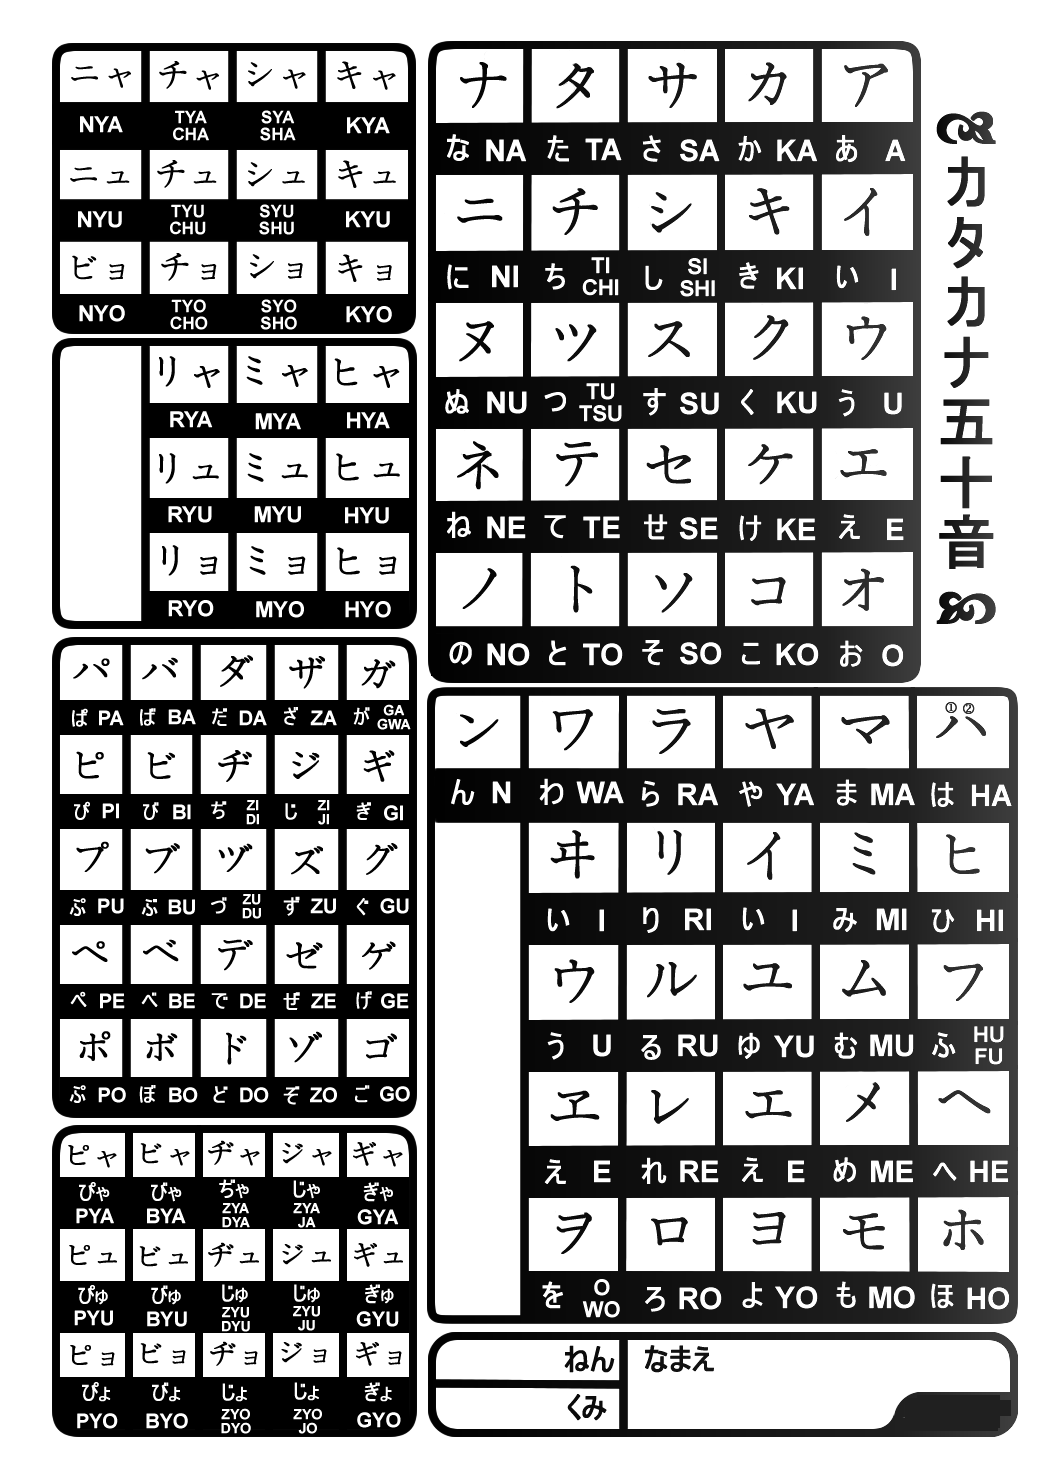 Bộ chữ cái Katakana Nhật Bản